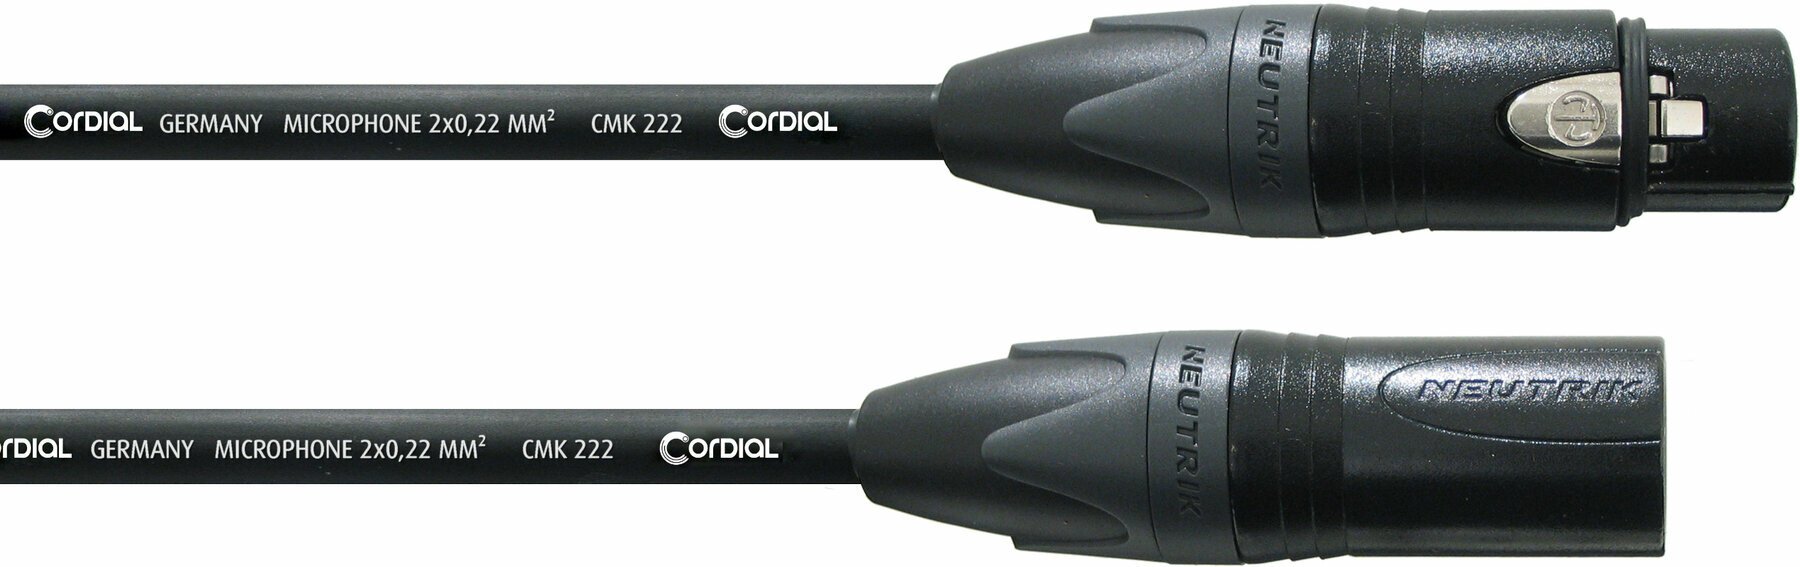 Cablu complet pentru microfoane Cordial CPM 5 FM Negru 5 m